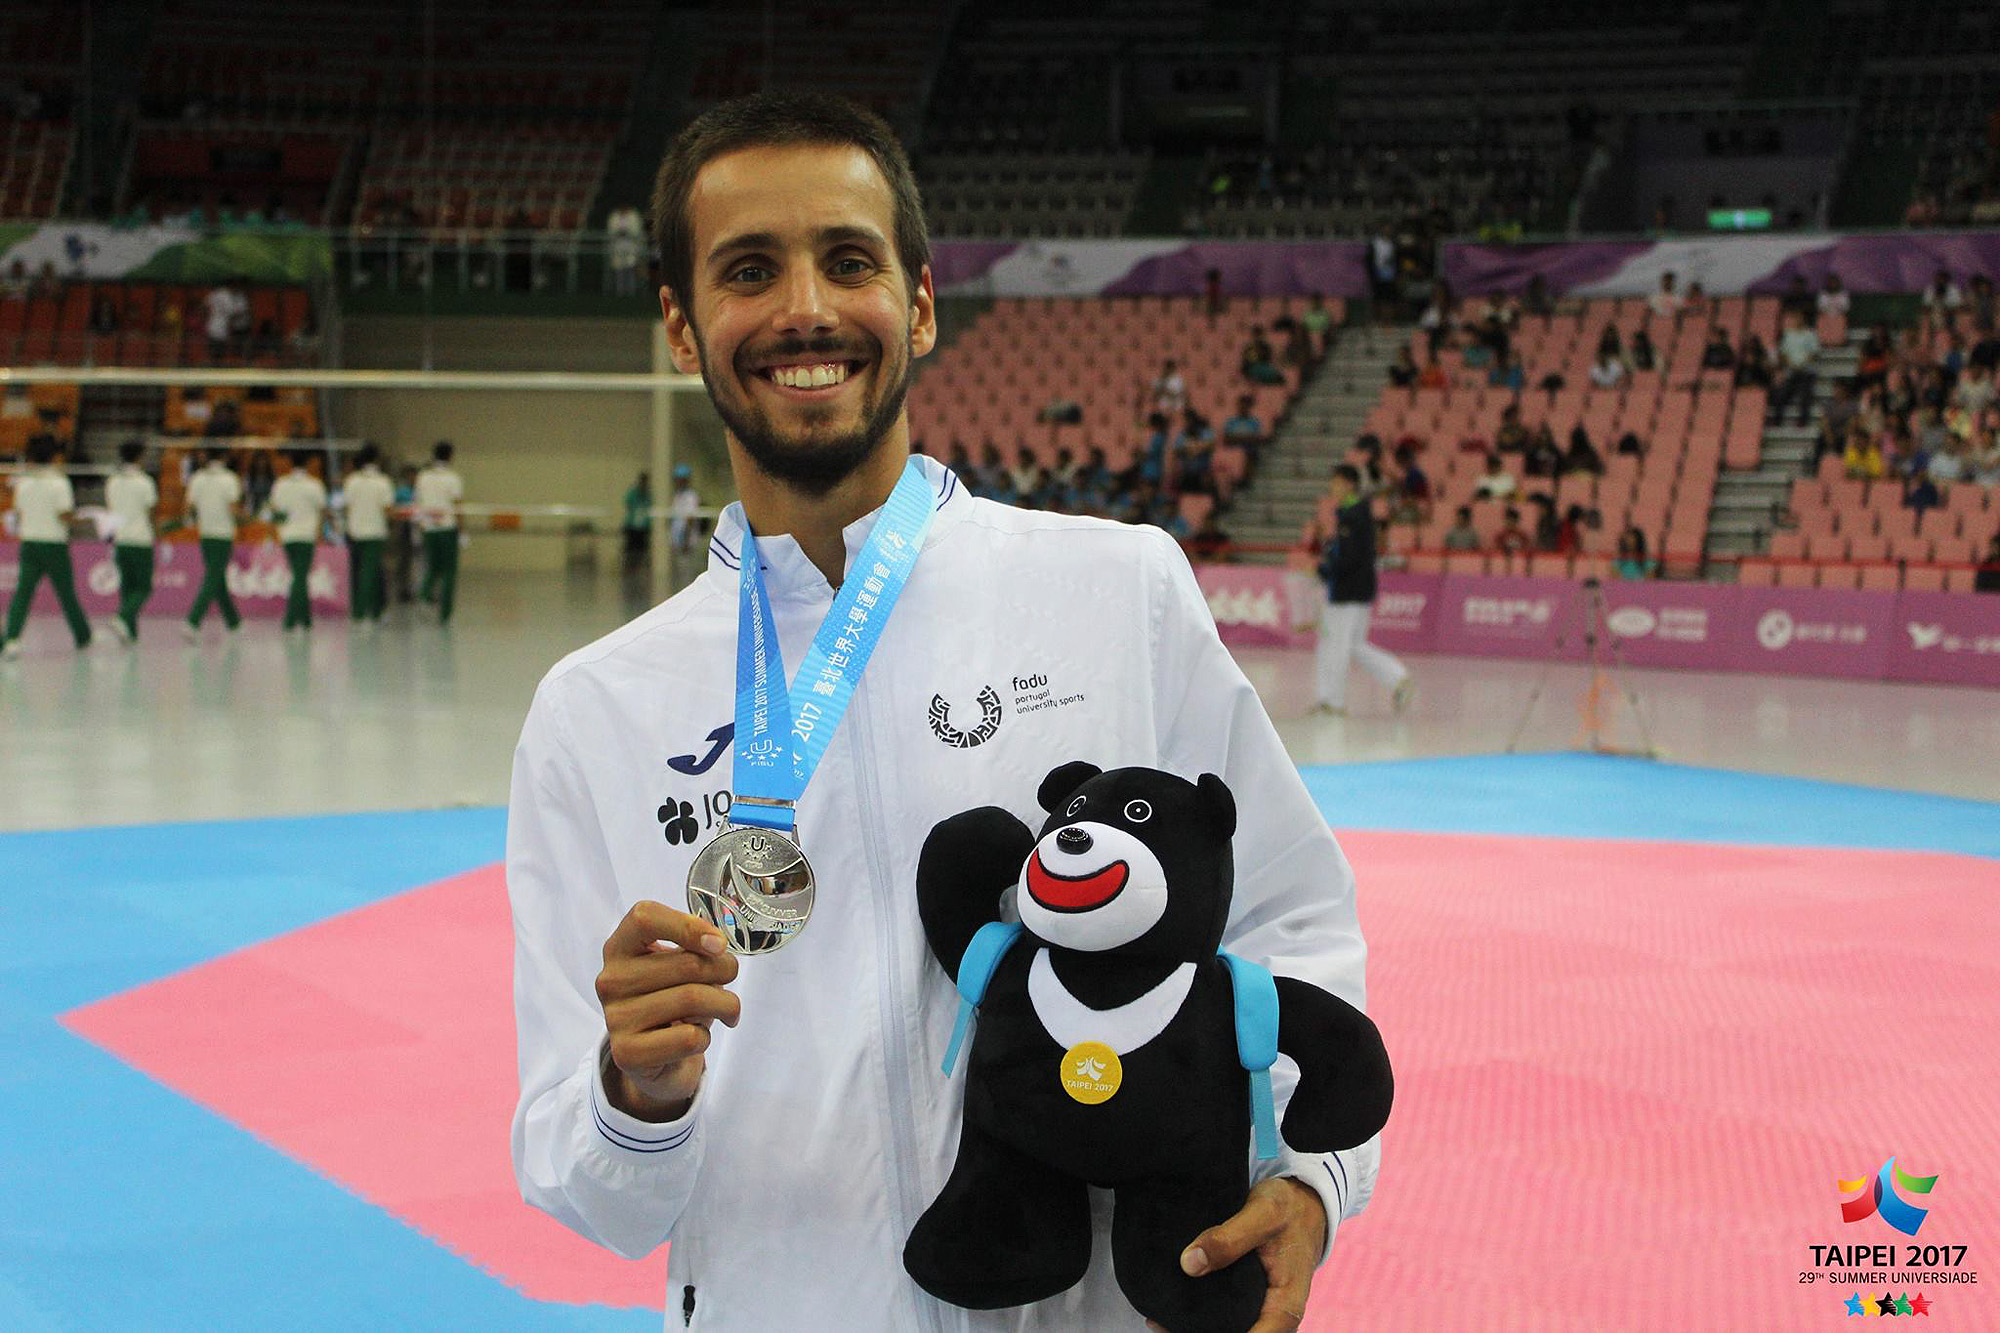 Na cidade de Taipei, em 2017, Rui Bragança somou a segunda medalha de prata por Portugal no Taekwondo.